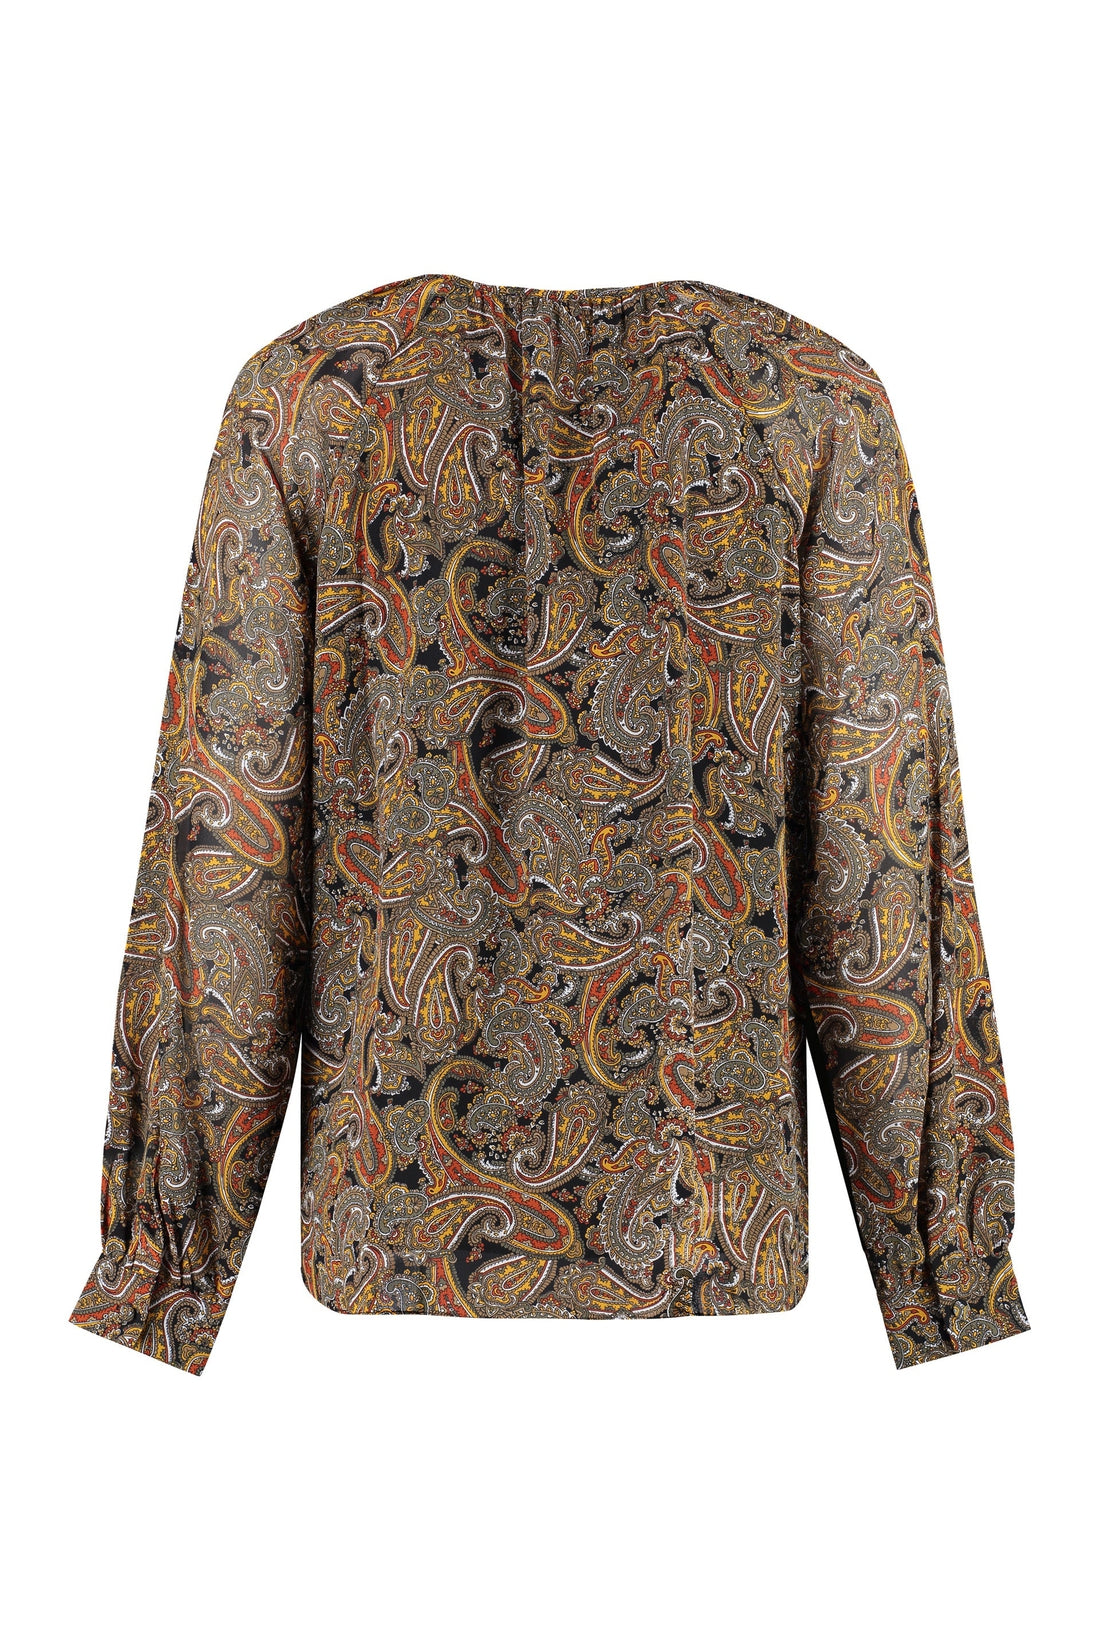 MICHAEL MICHAEL KORS-OUTLET-SALE-Printed georgette blouse-ARCHIVIST